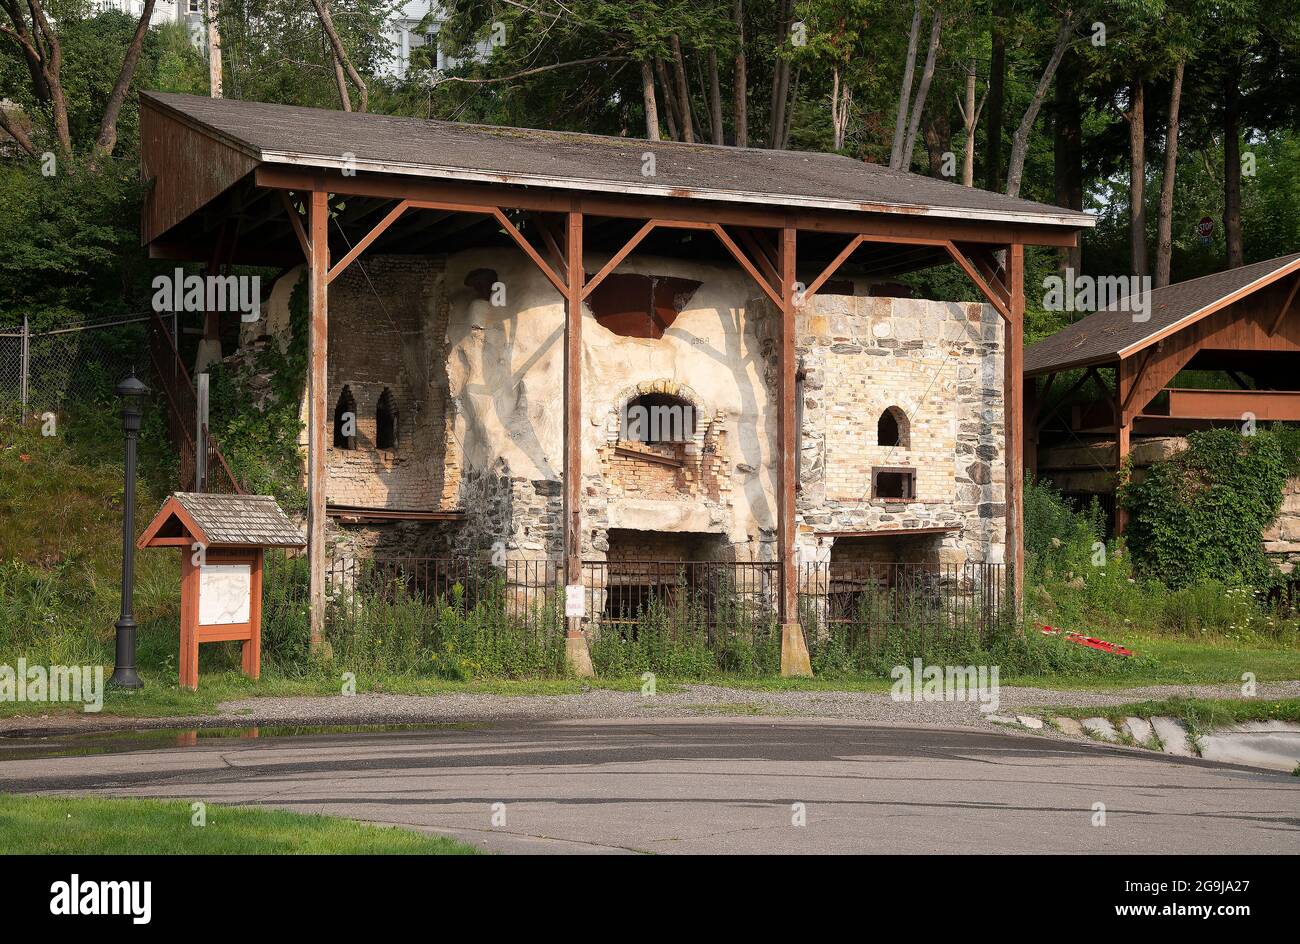 Los históricos hornos de cal conservados en Rockport, Maine, EE.UU Foto de stock